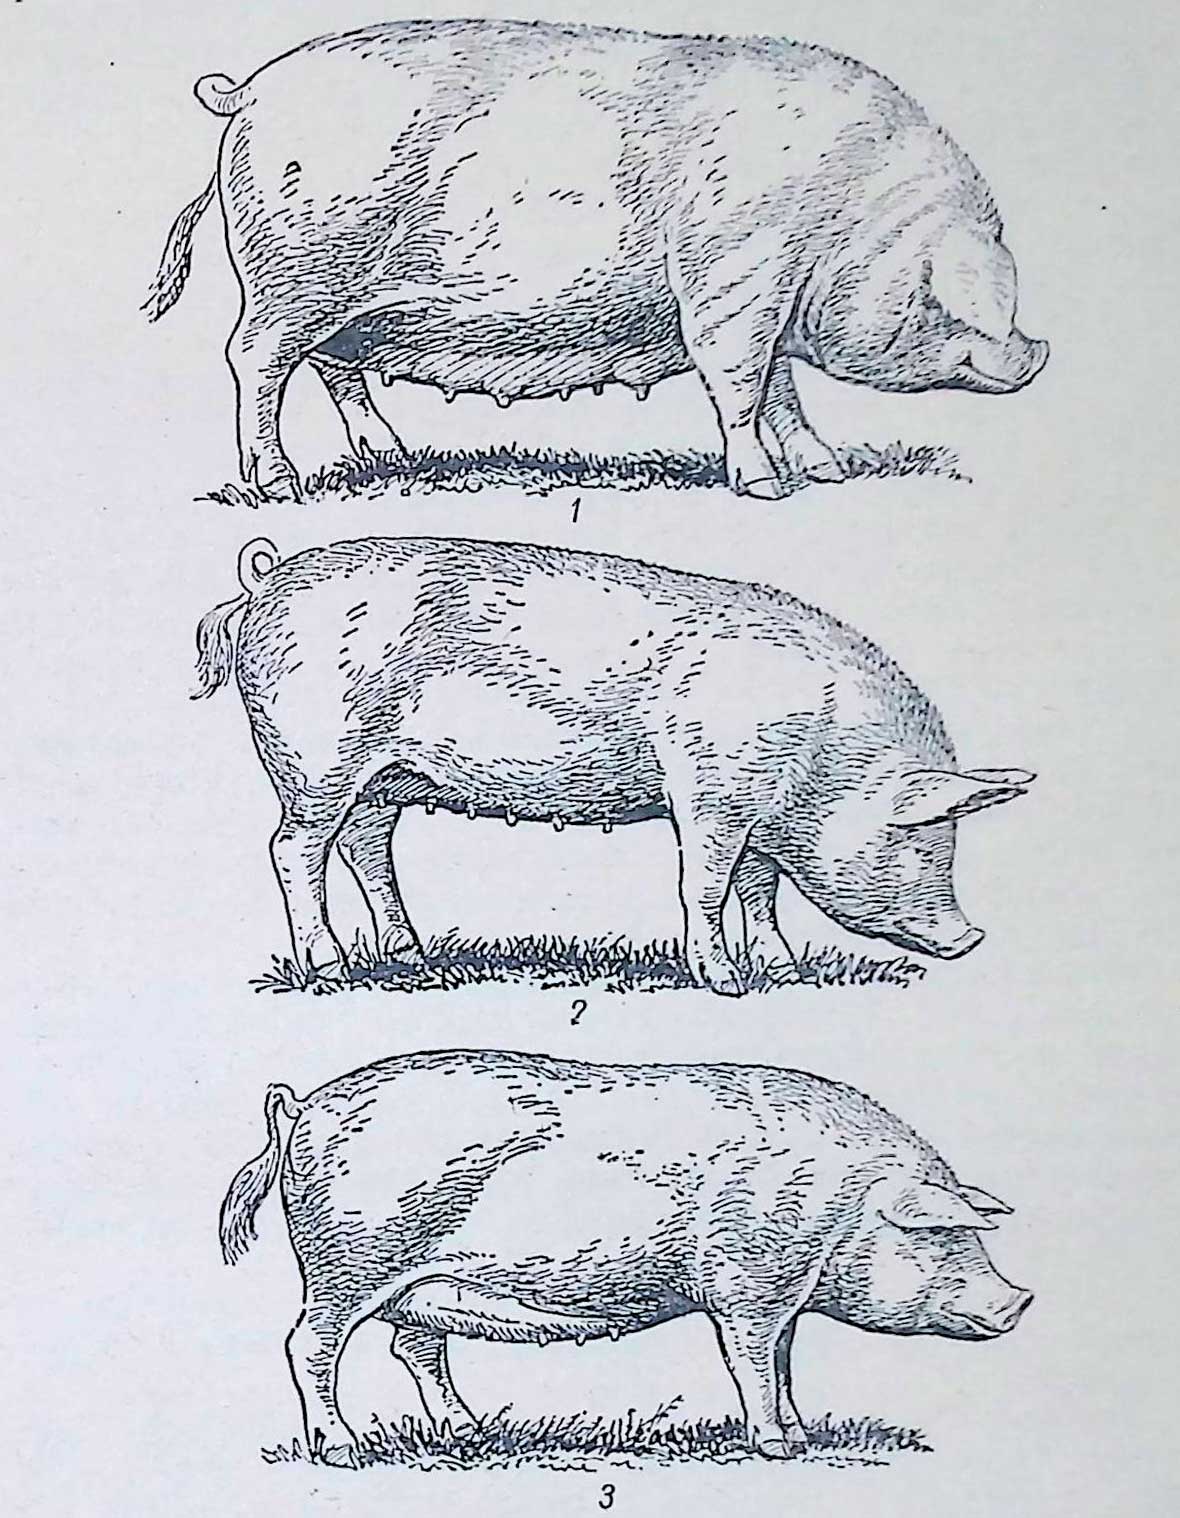 Сальный (/), мясной (2), полусальнын (3) типы свиней